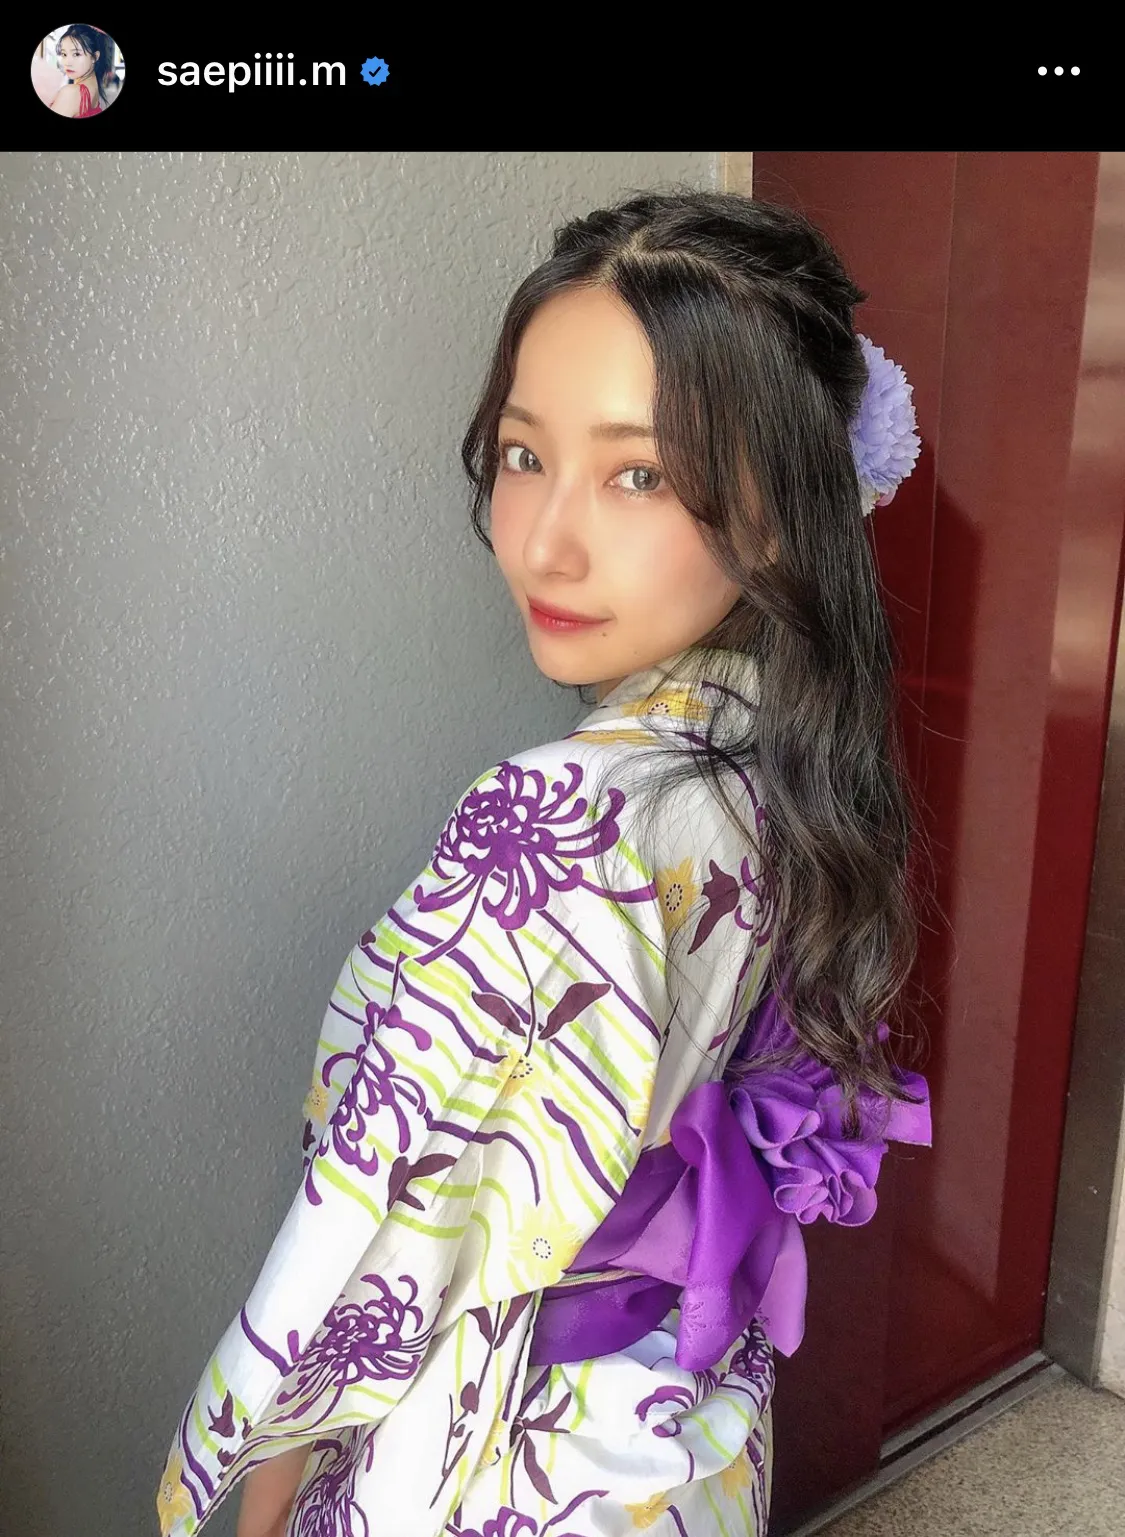 【写真を見る】村瀬紗英、紫の浴衣を身にまとい可愛らしい笑顔